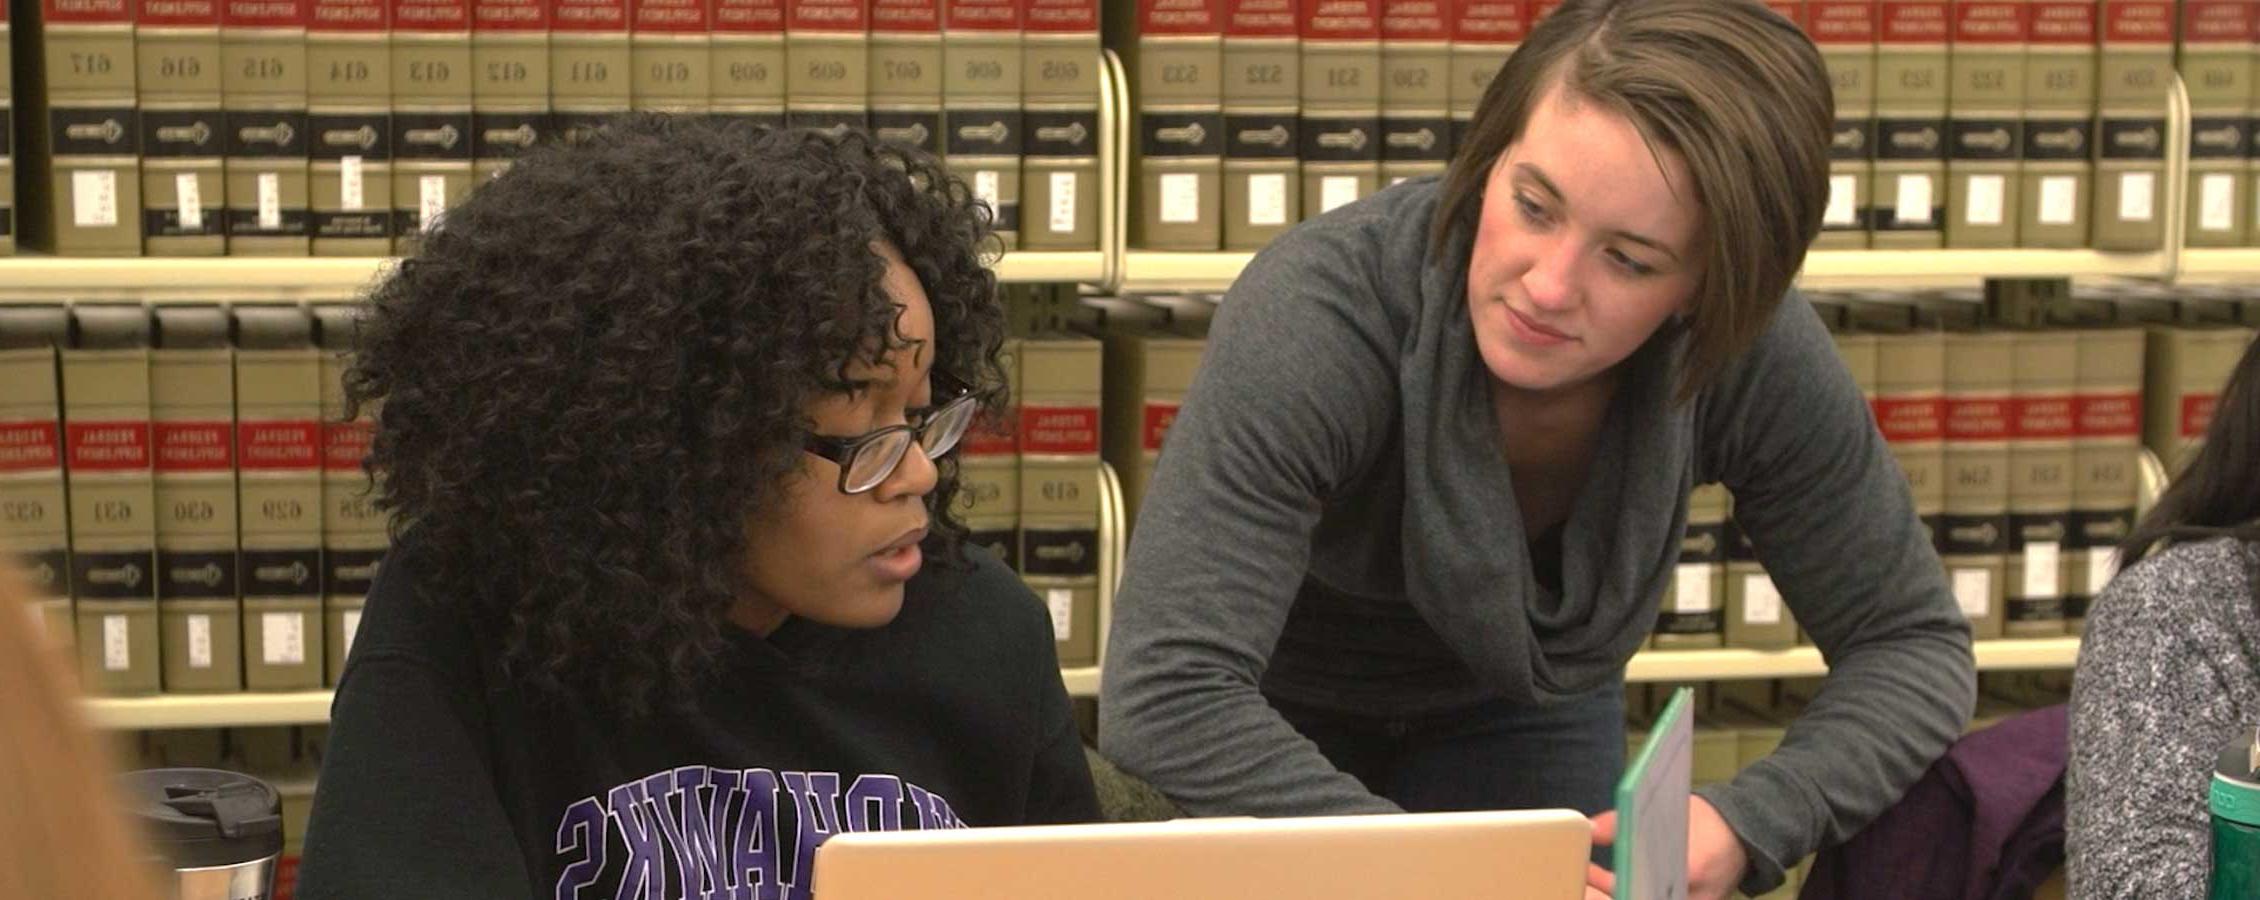 两个学生在图书馆学习.